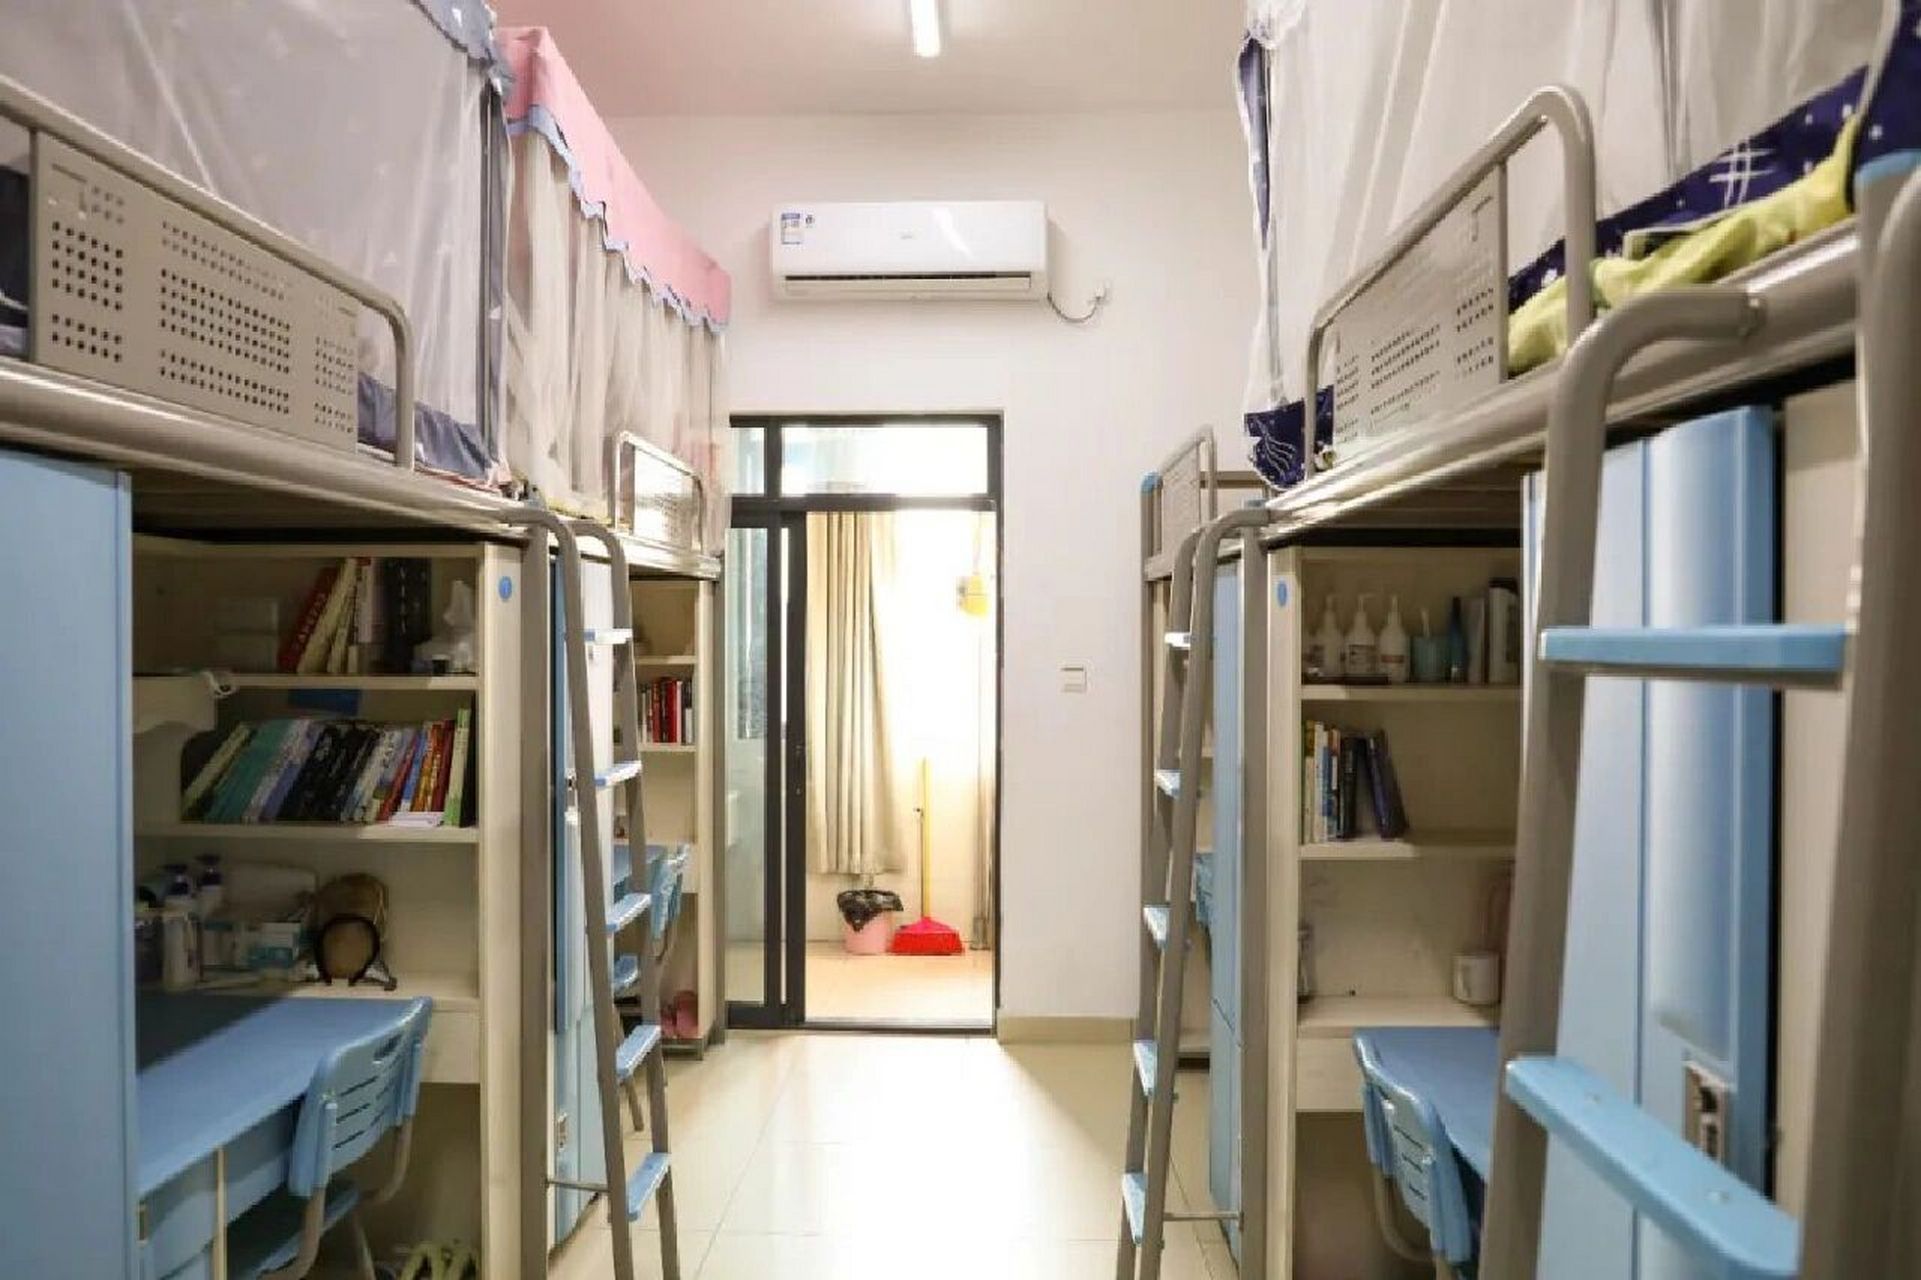 重庆清华中学宿舍照片图片